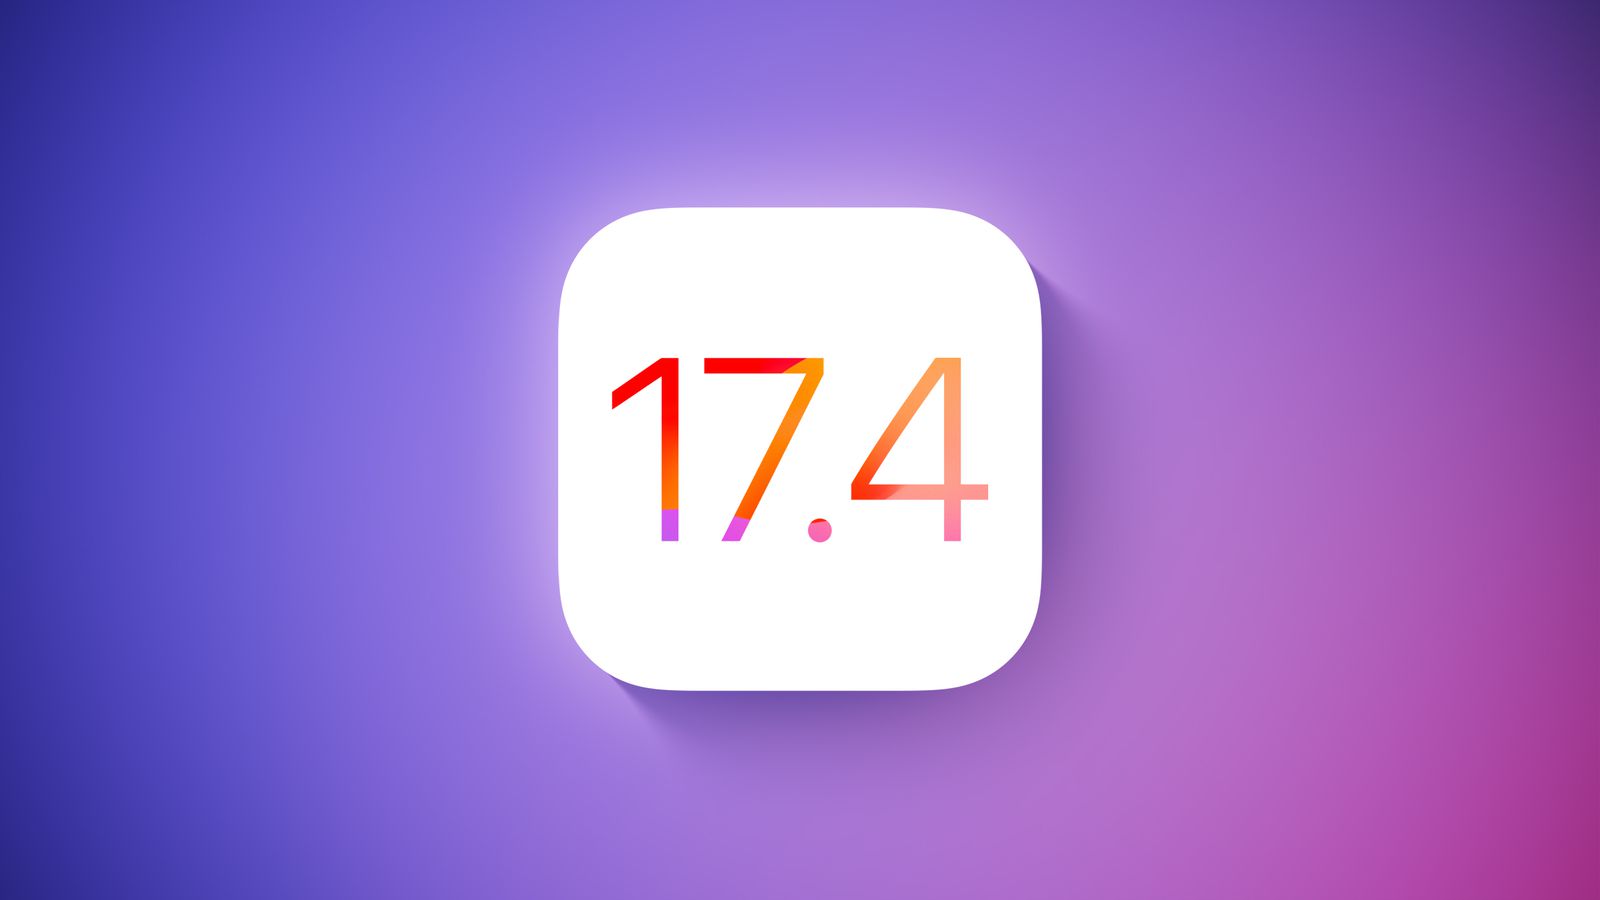 Vem aí o iOS 17.4! Conhece as novidades da próxima atualização para iPhone post image